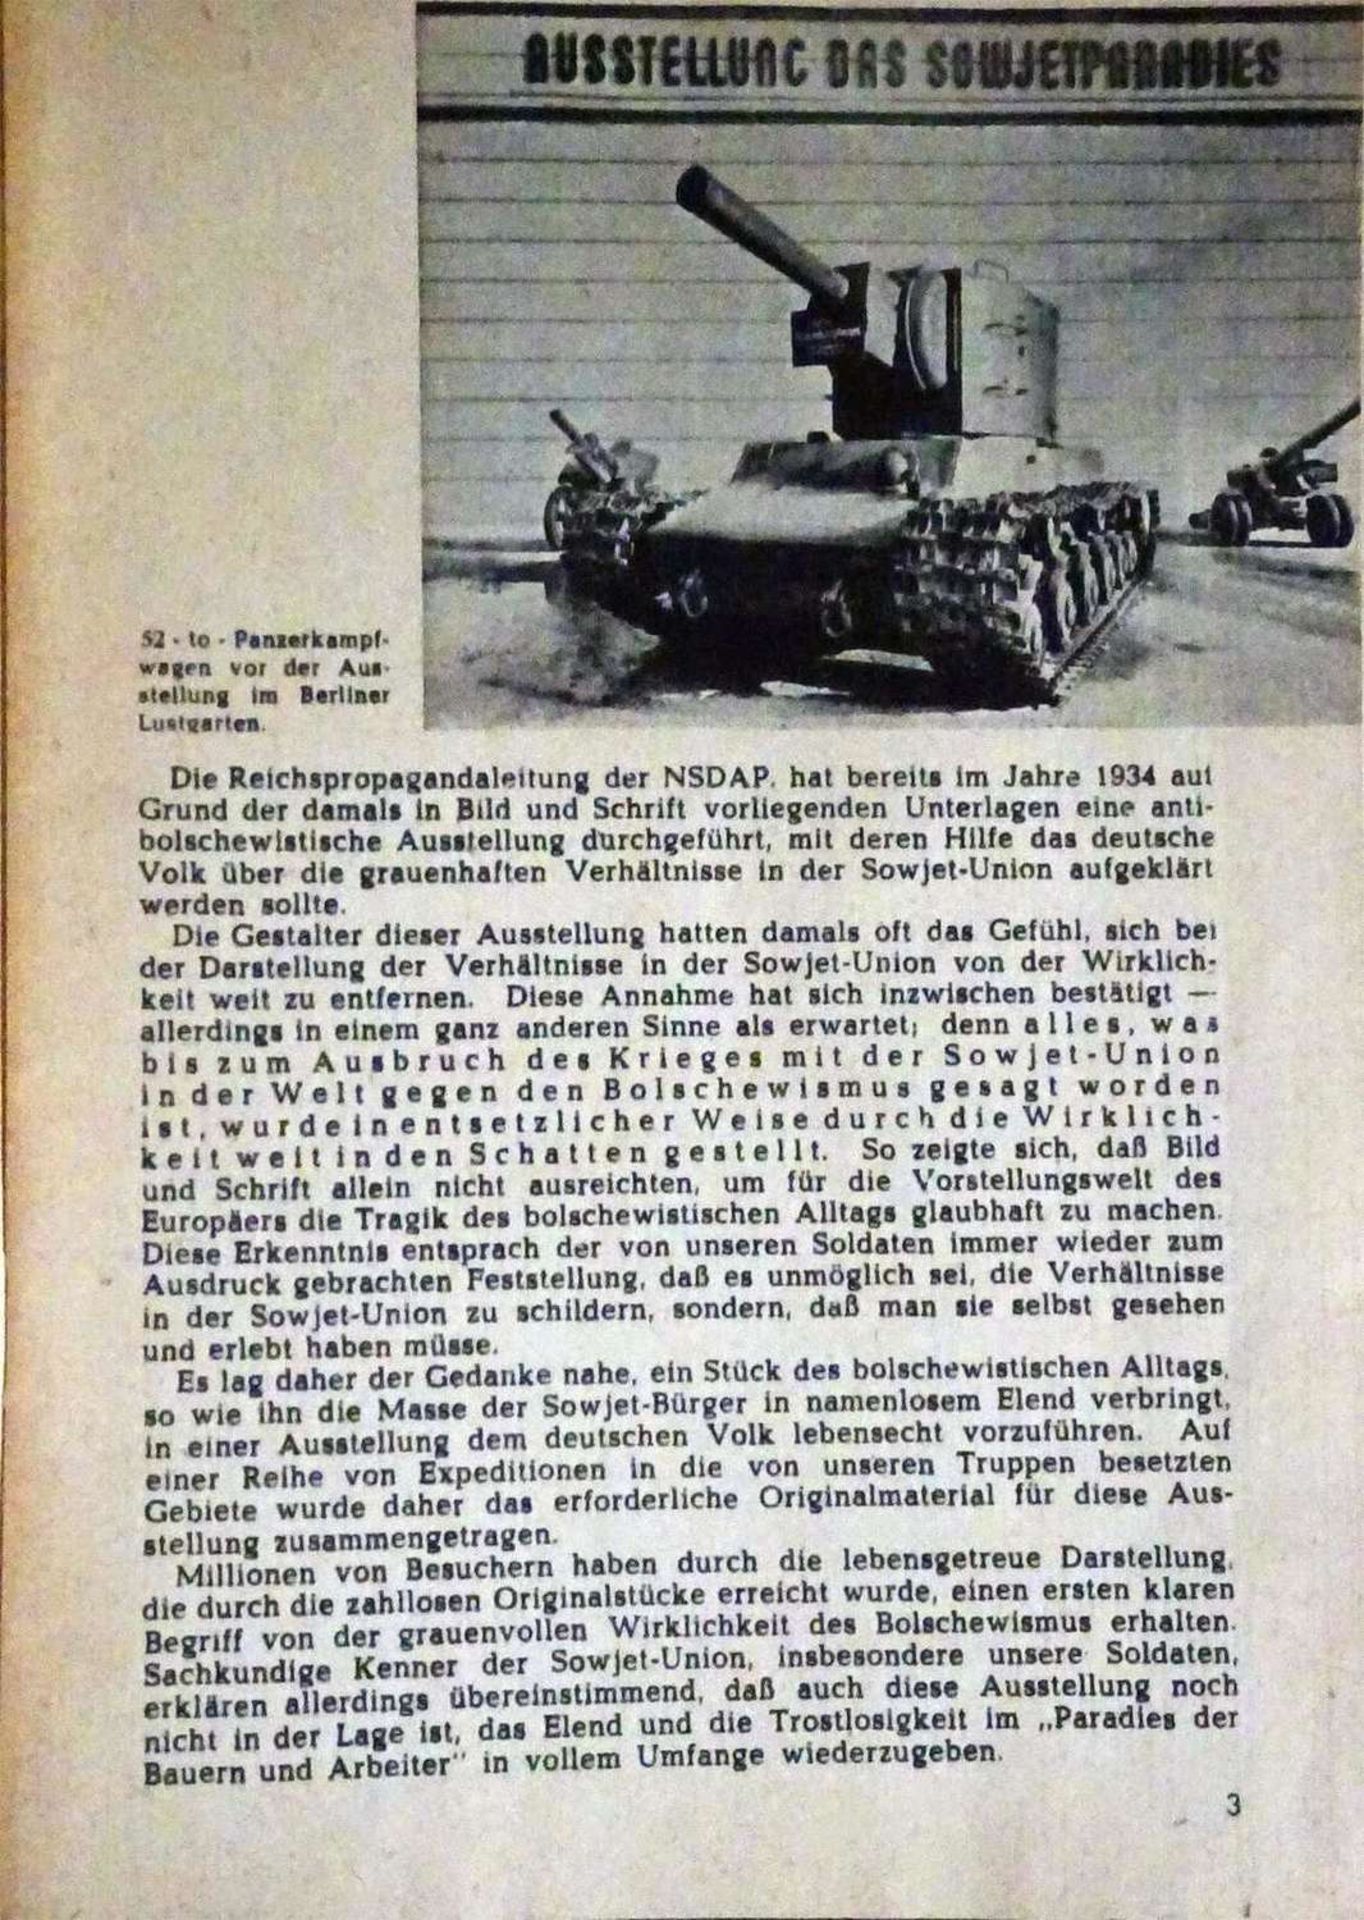 "Das Sowjet-Paradies", Ausstellung der Reichspropagandaleitung der NSDAP. Ein Bericht in Wort und - Bild 2 aus 4